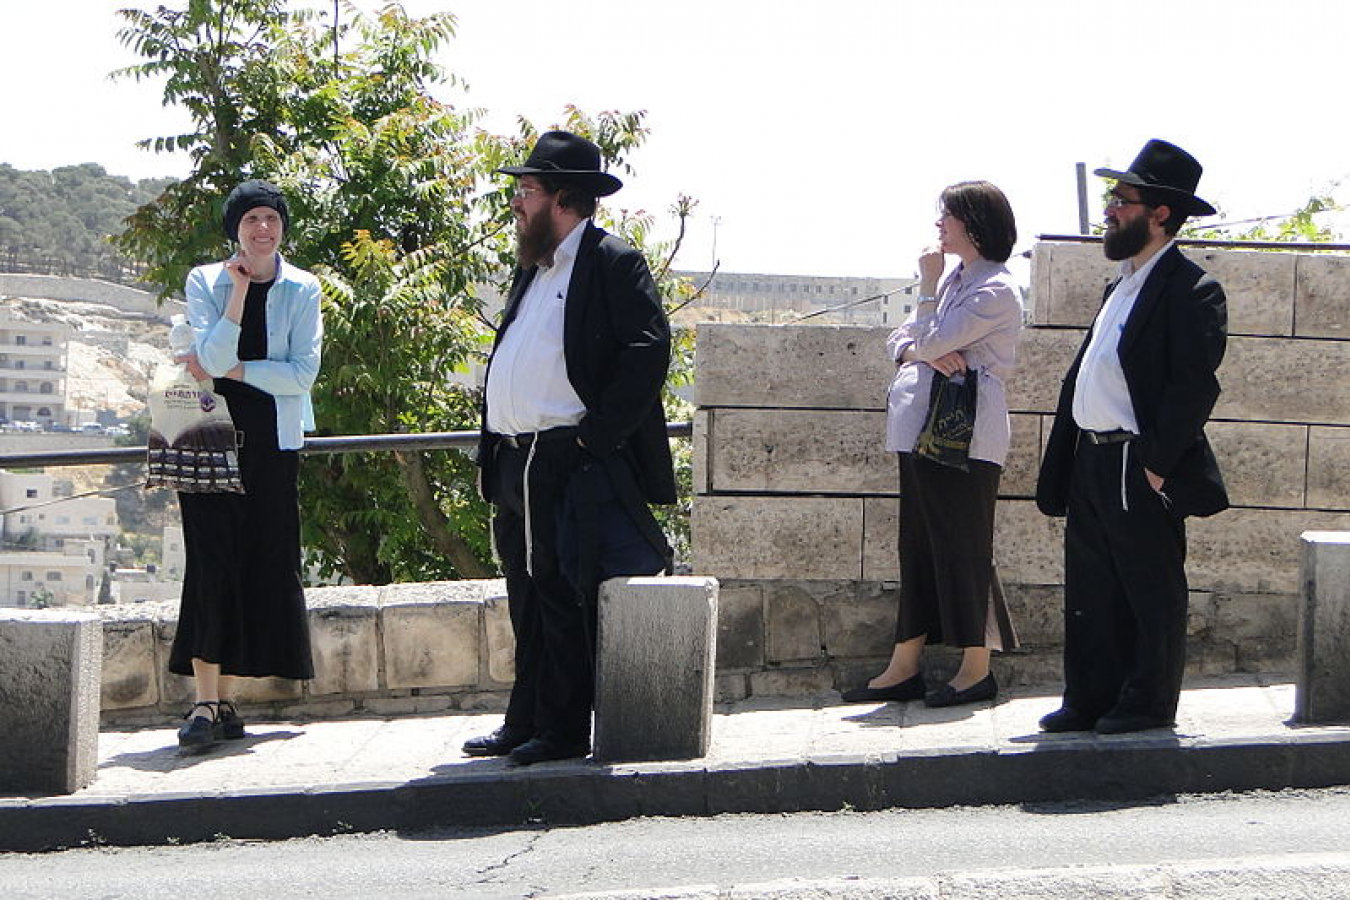 Orthodox Jews in Israel